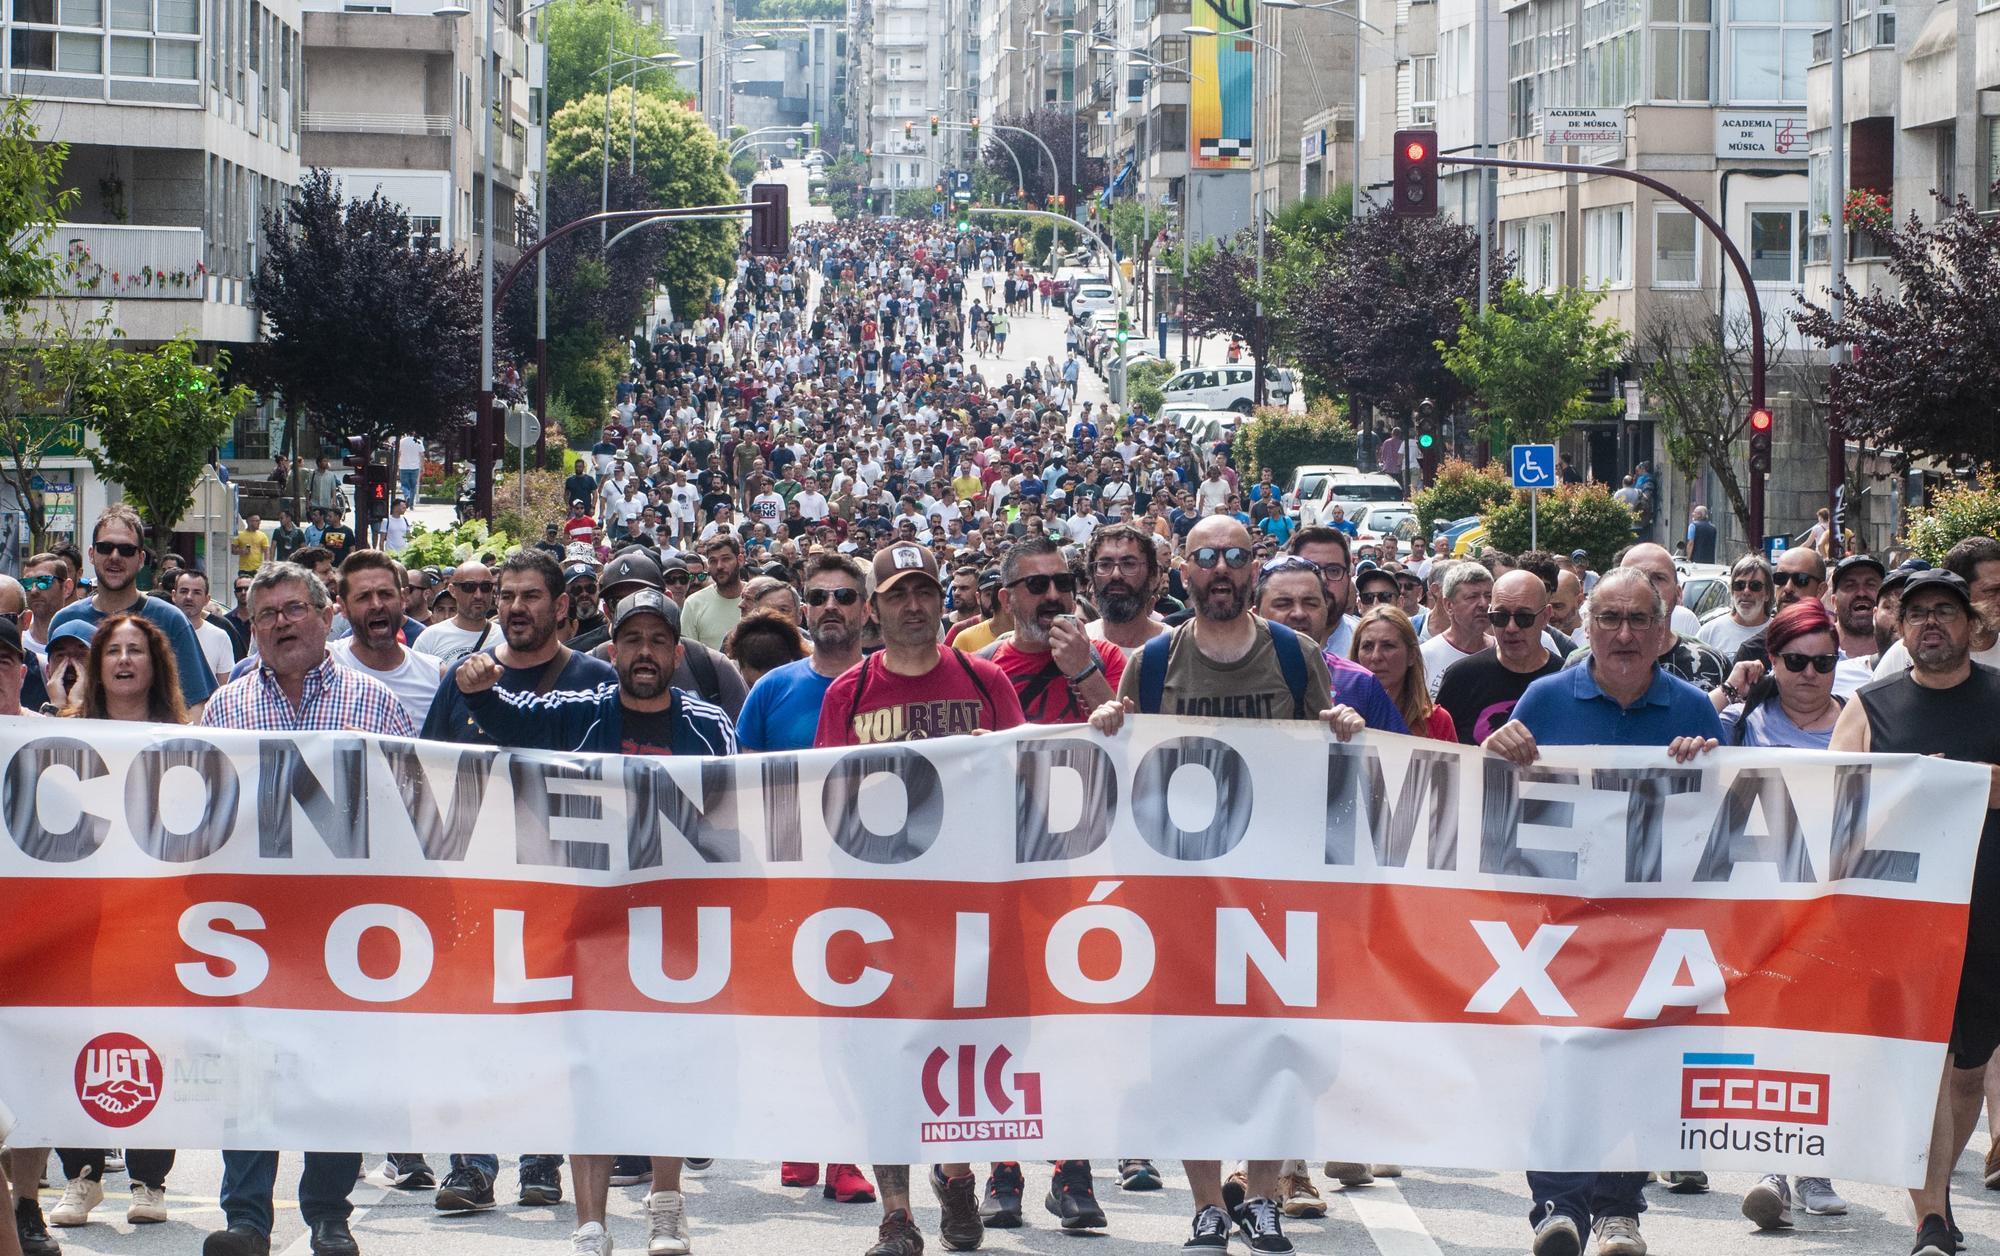 Cuarto día de folga do sector do metal en Pontevedra - 14